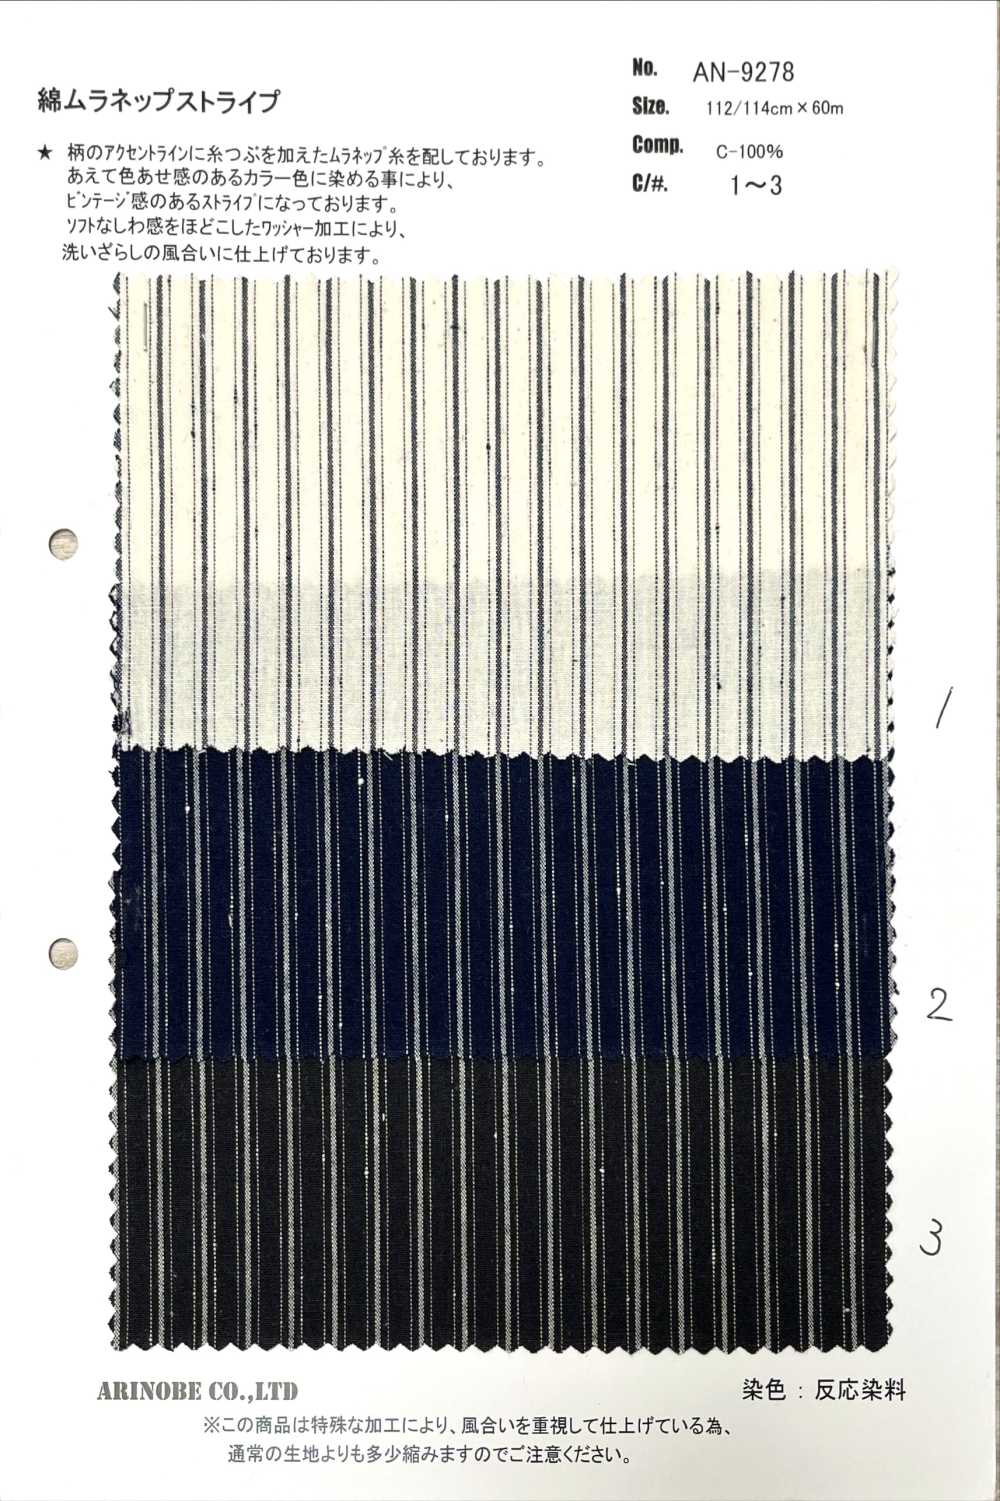 AN-9278 Algodón Muranep Raya[Fabrica Textil] ARINOBE CO., LTD.